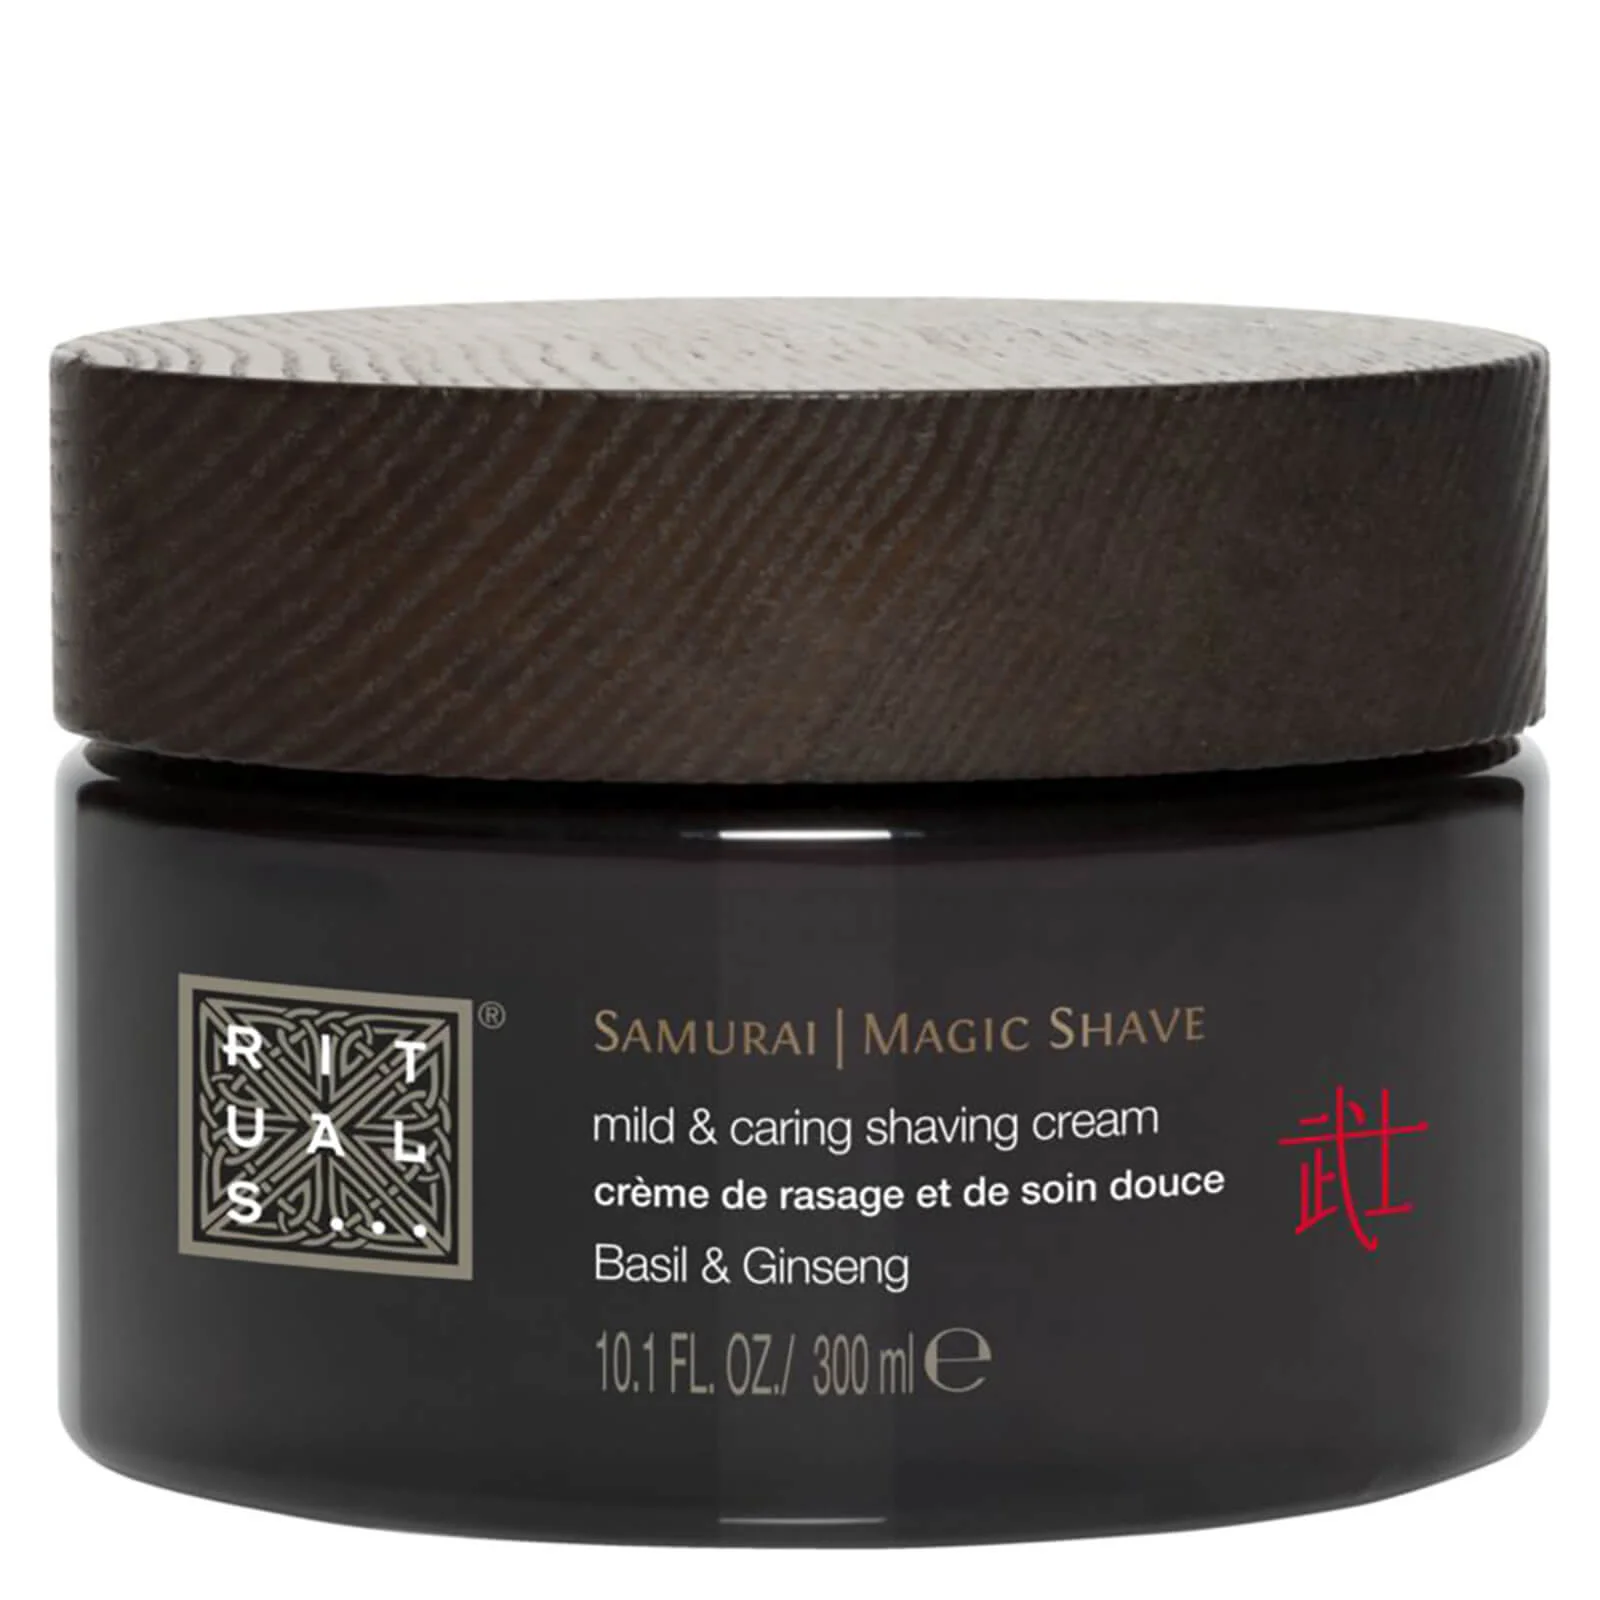 Rituals Samurai Magic Shave 3-in-1 Shaving Cream (300ml) Image 1